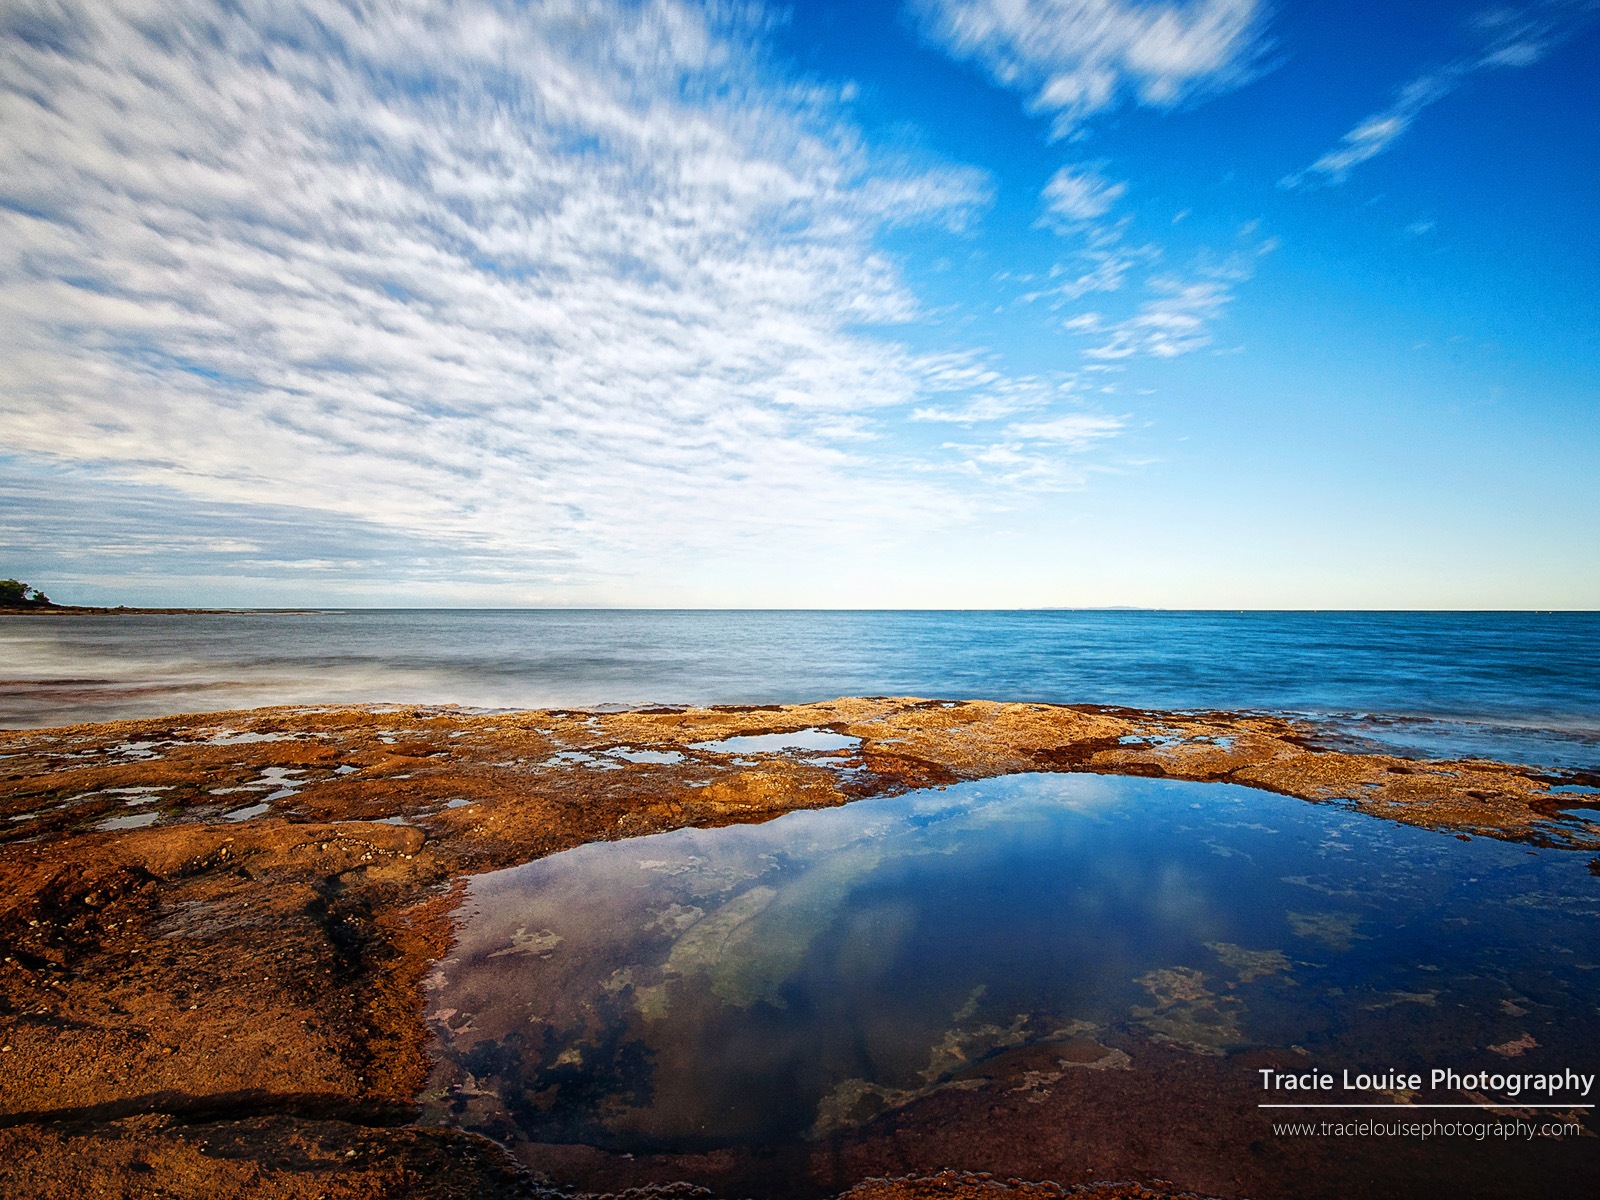 澳大利亚昆士兰州，风景秀丽，Windows 8 主题高清壁纸18 - 1600x1200